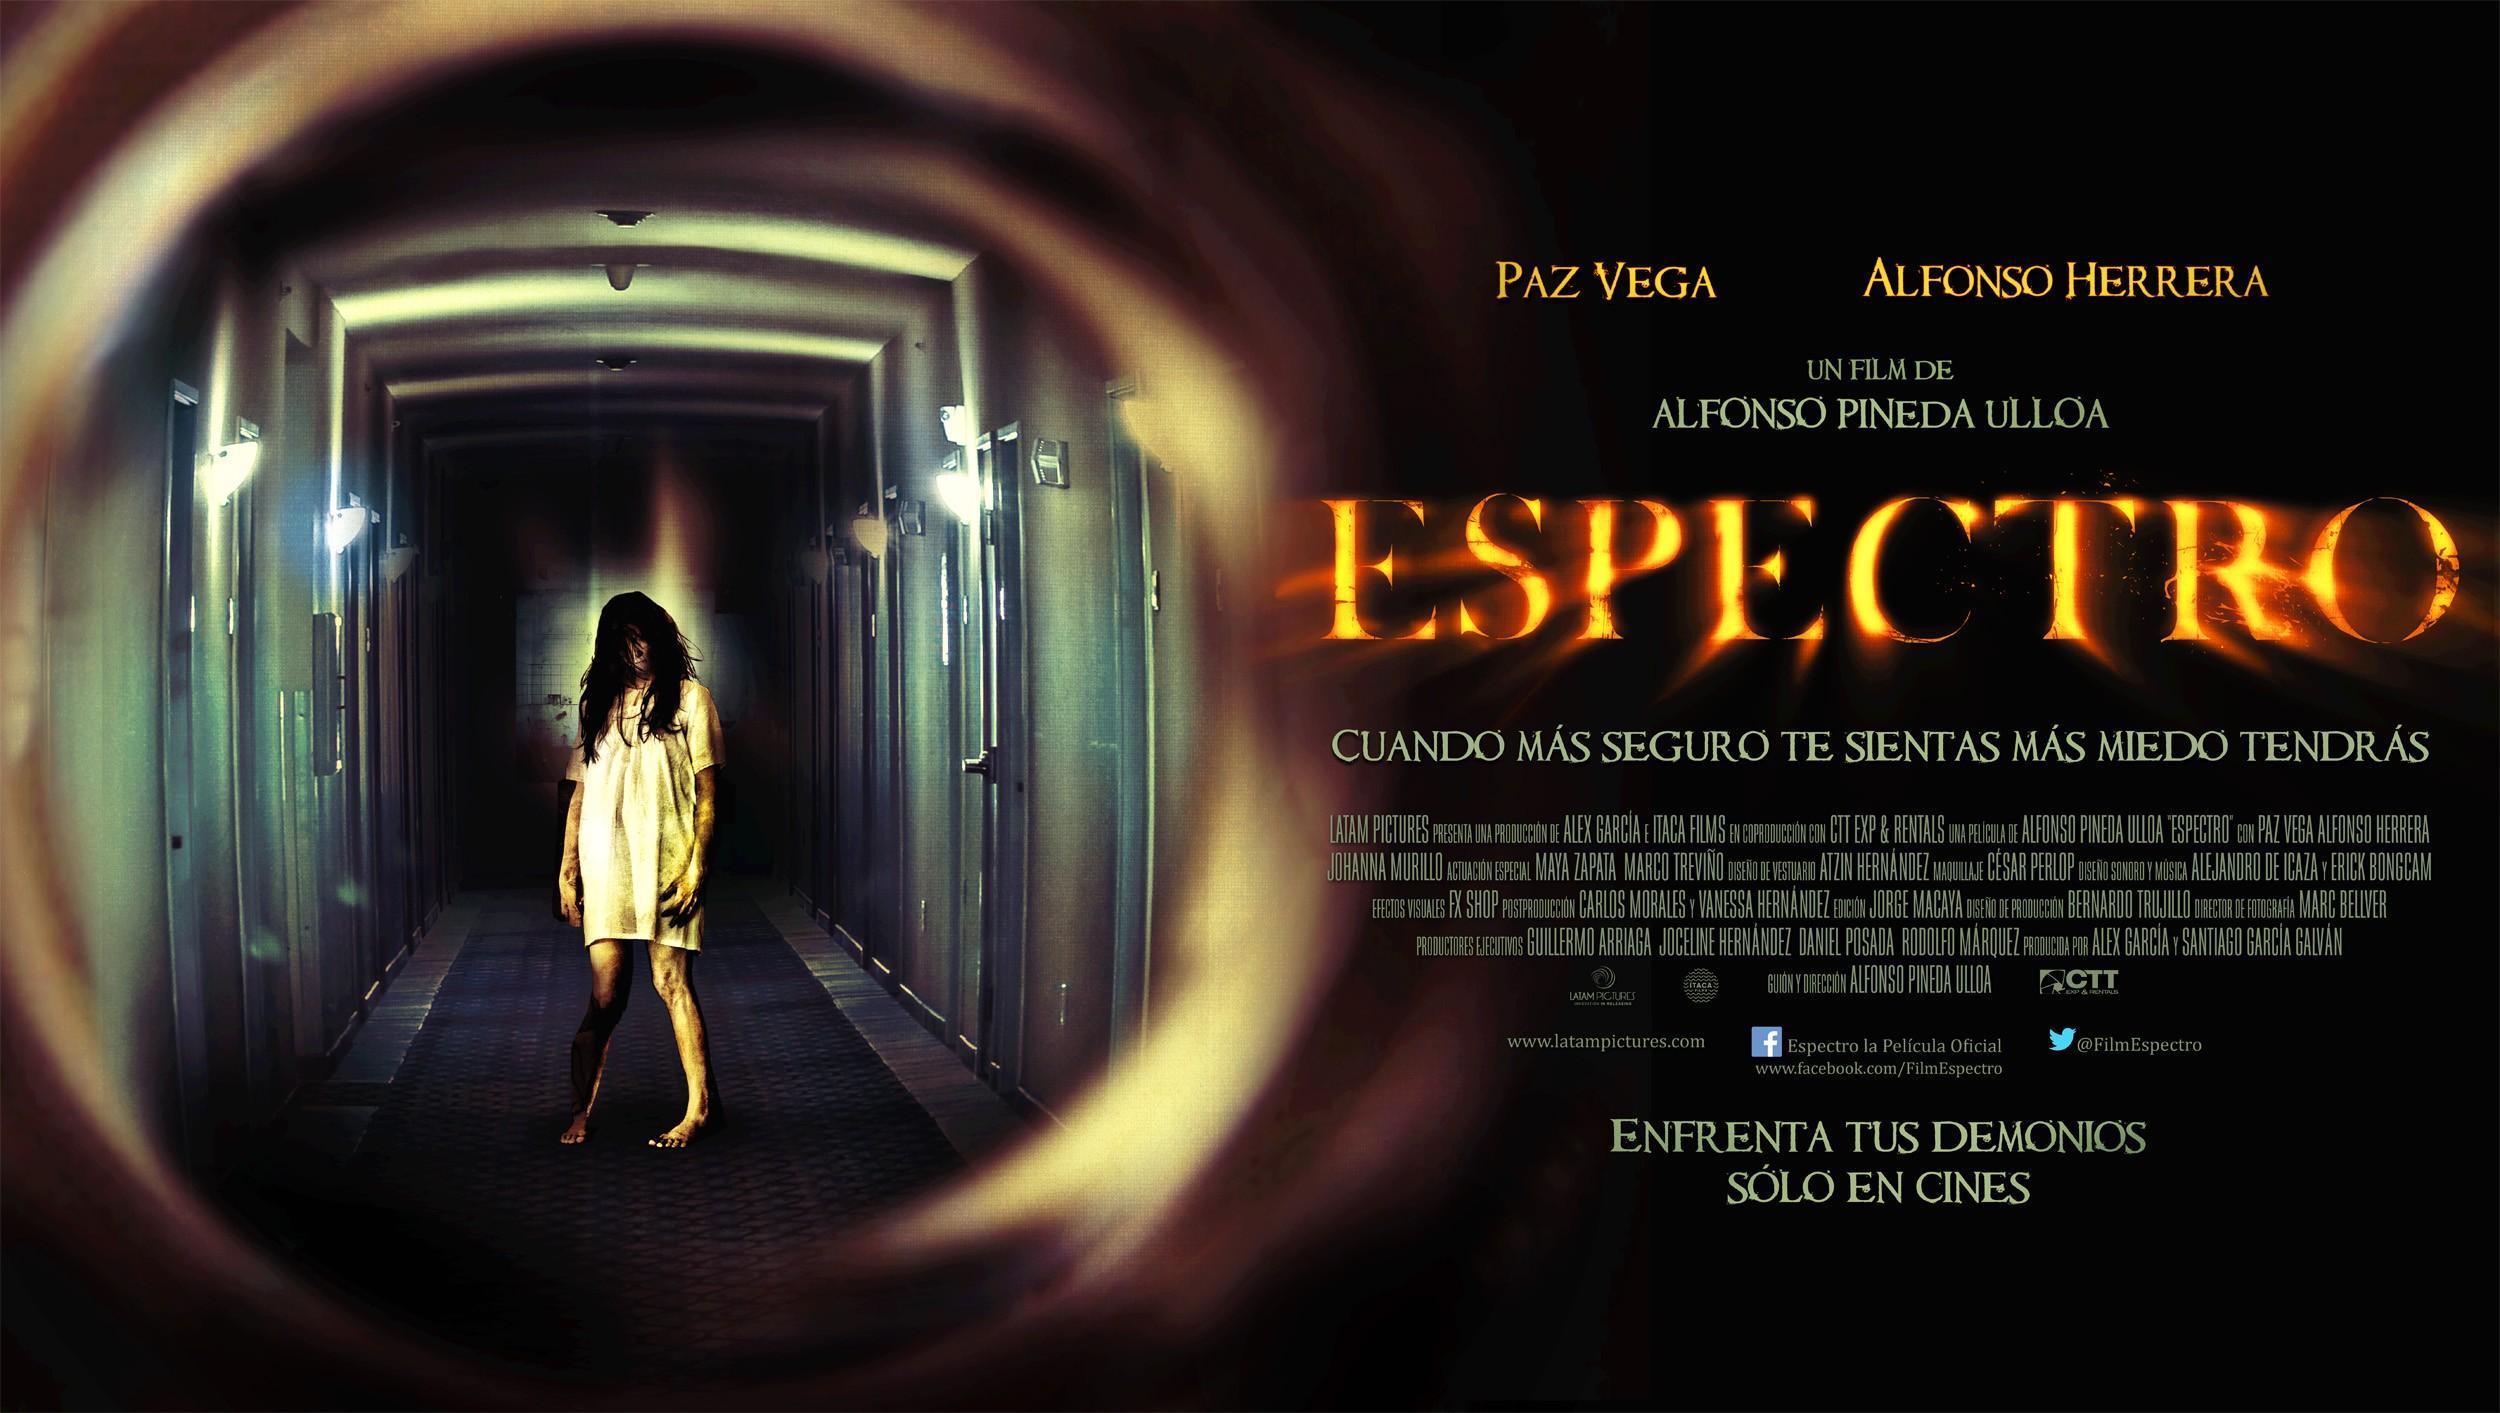 Постер фильма Espectro